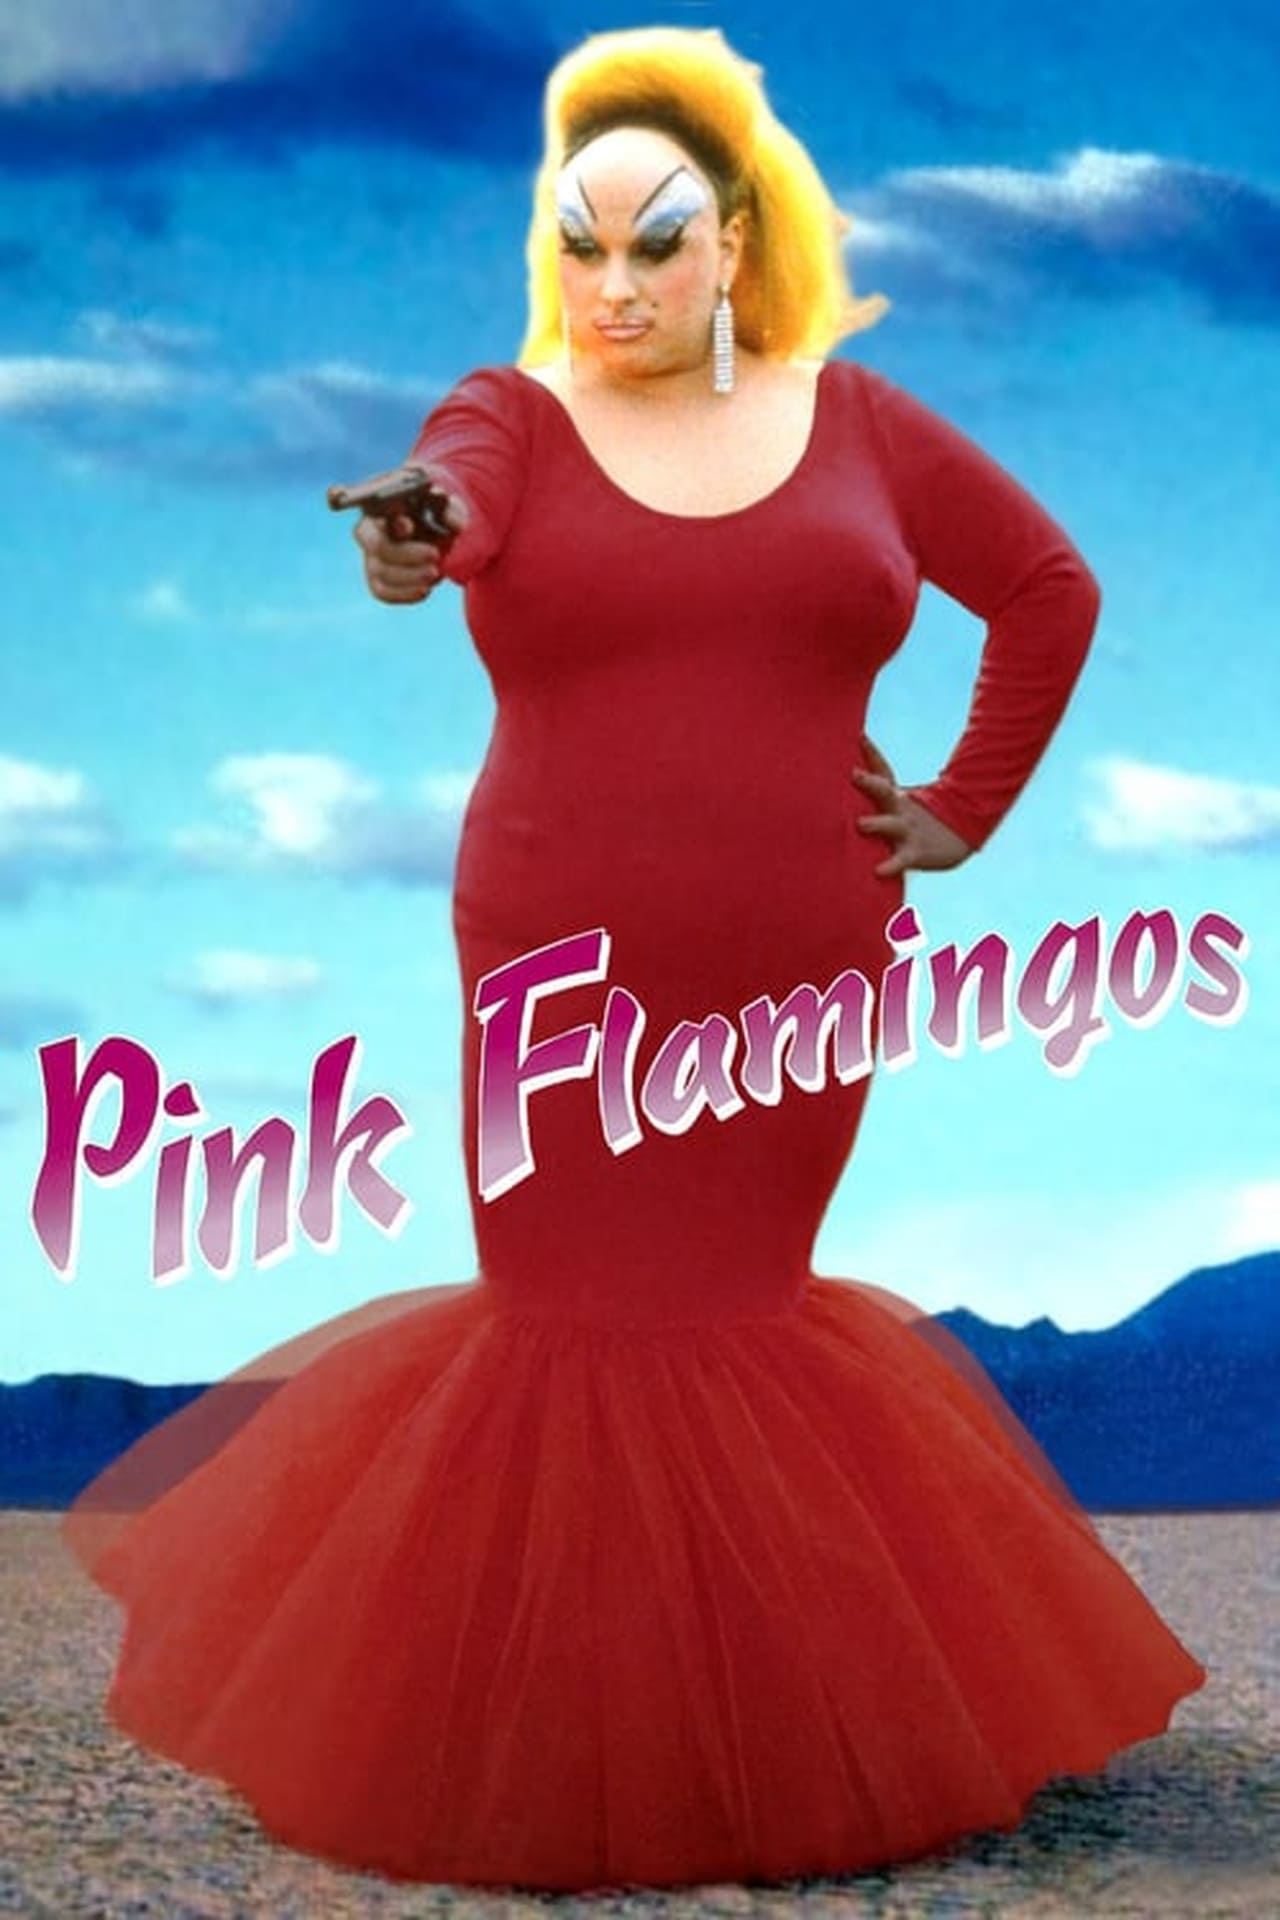 Pink Flamingos Dublado Online